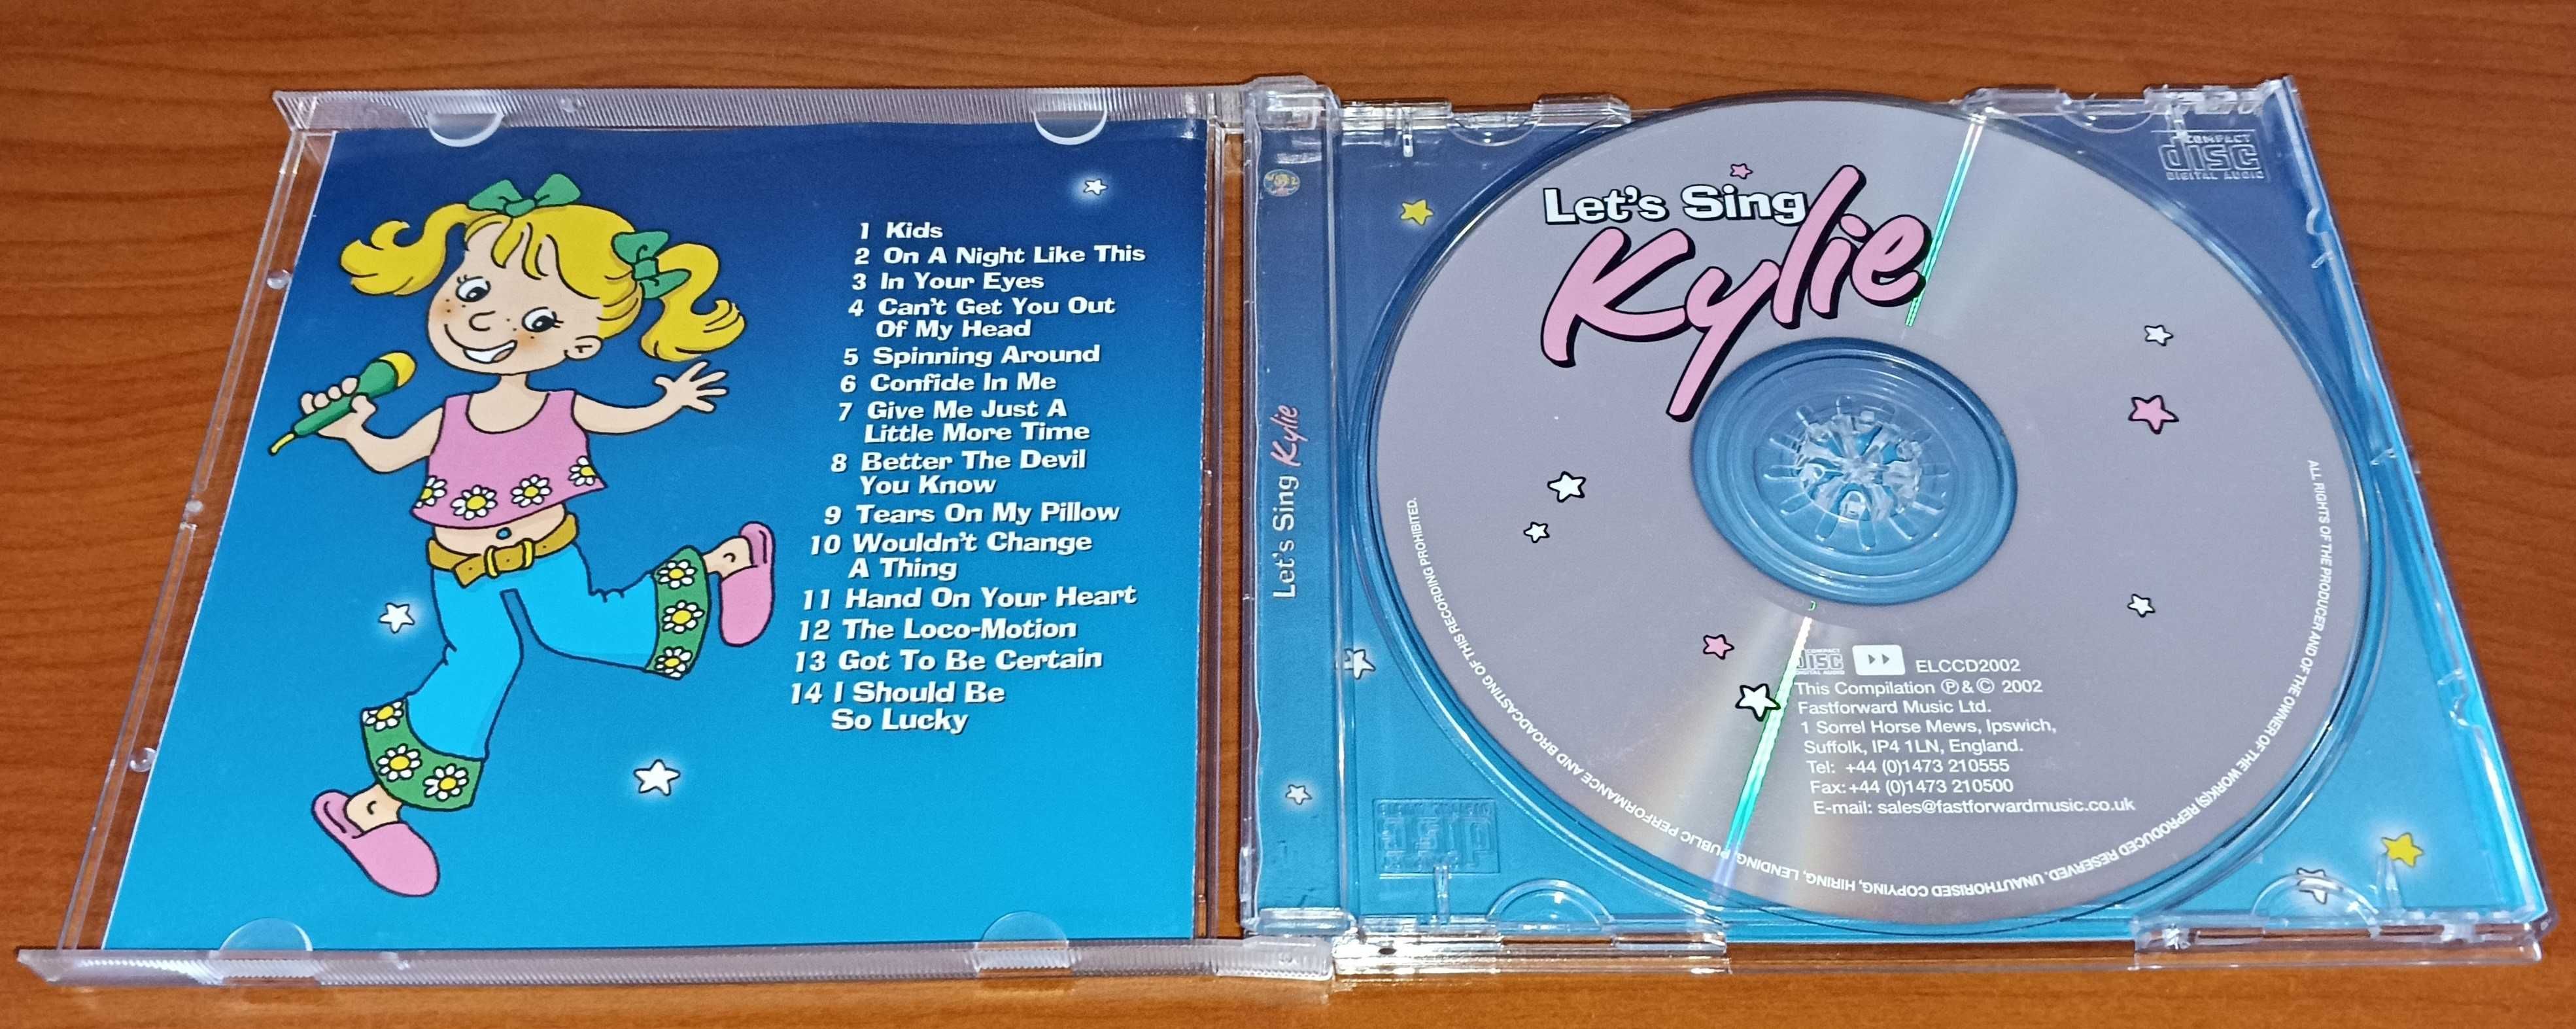 CD Let's Sing Kylie